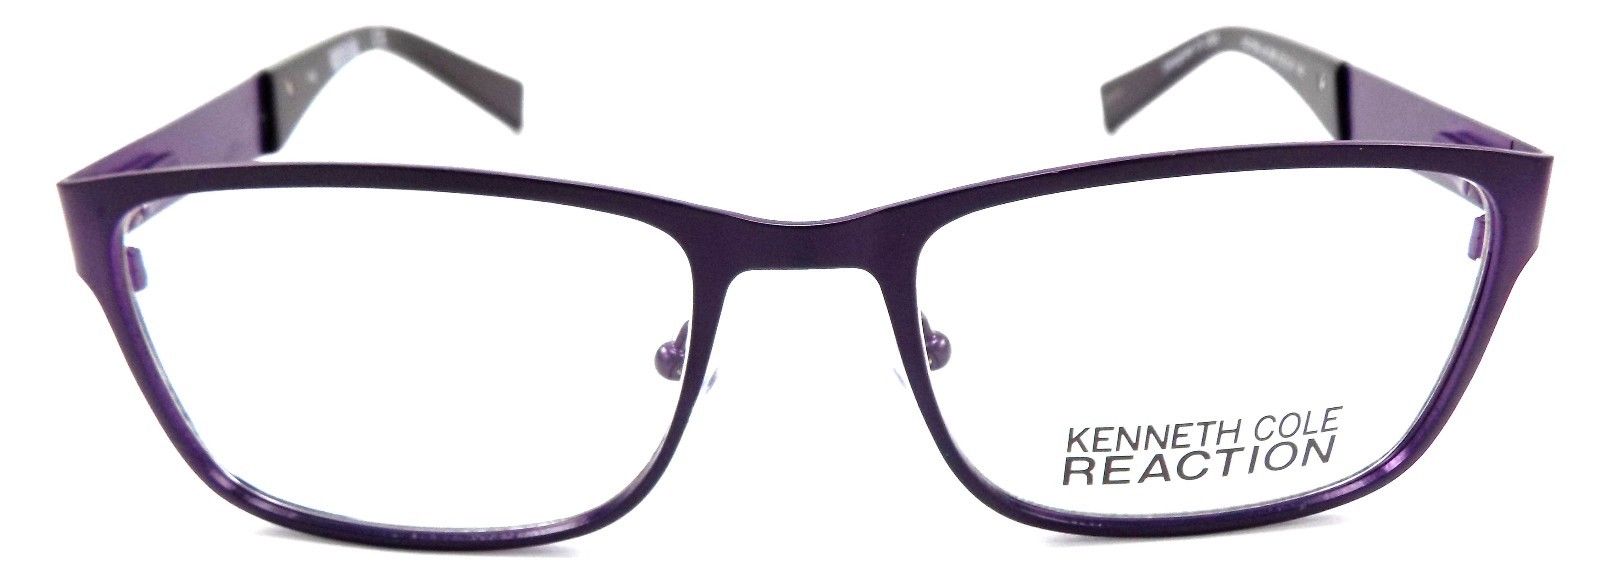 2-Kenneth Cole REACTION KC0769 082 Eyeglasses 52-18-140 Matte Violet + Case-664689705702-IKSpecs